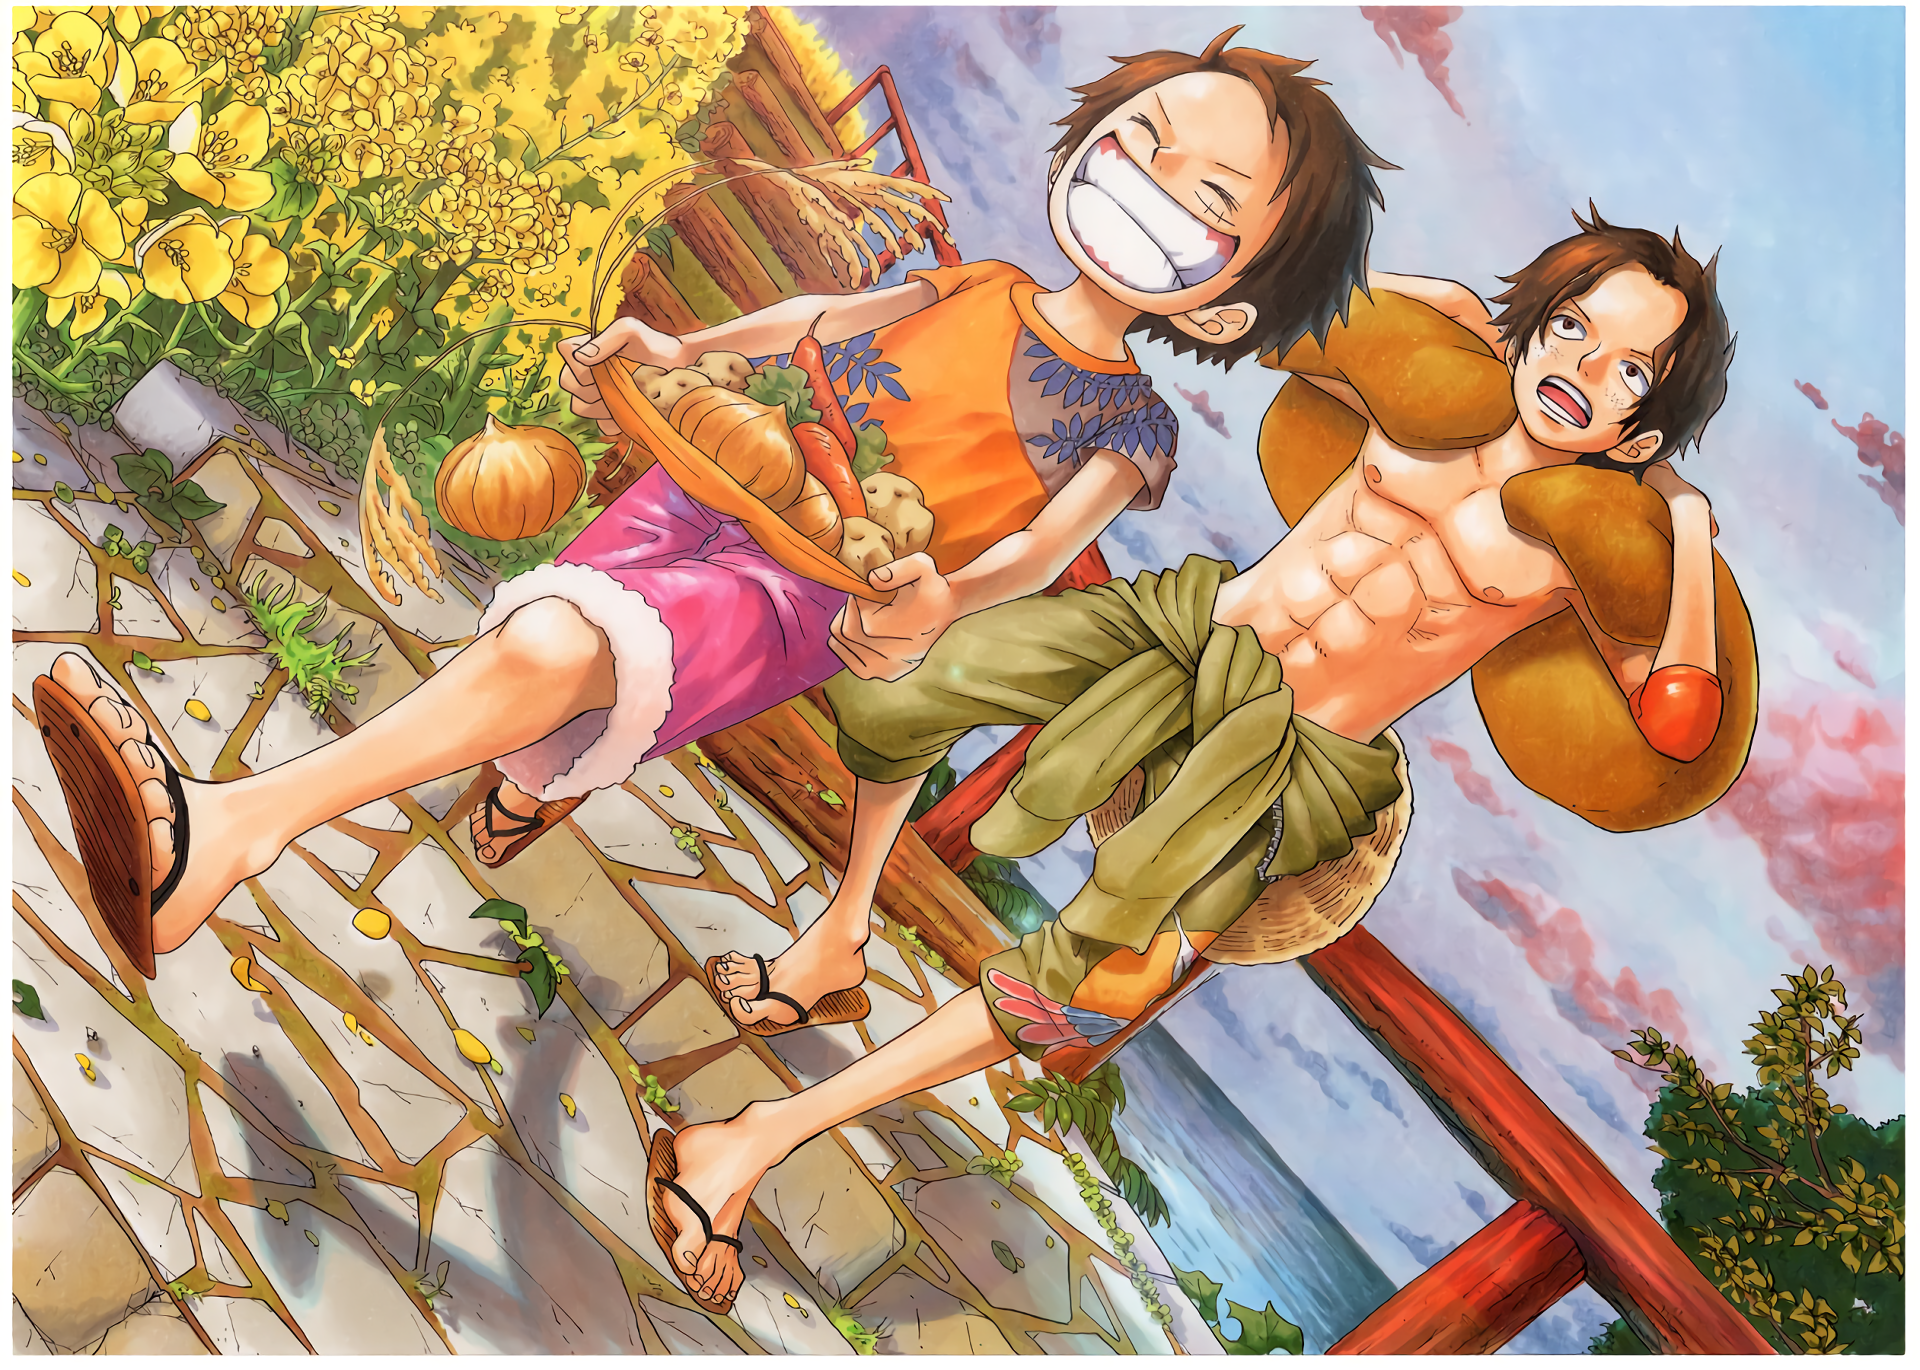 Bạn đang tìm kiếm một bức ảnh nền One Piece chất lượng cao? Đây là bức ảnh hoàn hảo cho bạn! Với độ phân giải cao và màu sắc tươi sáng, bạn có thể dễ dàng nhận ra mọi chi tiết trong bức ảnh. Bức ảnh này sẽ giúp cho màn hình của bạn trở nên sống động hơn bao giờ hết!